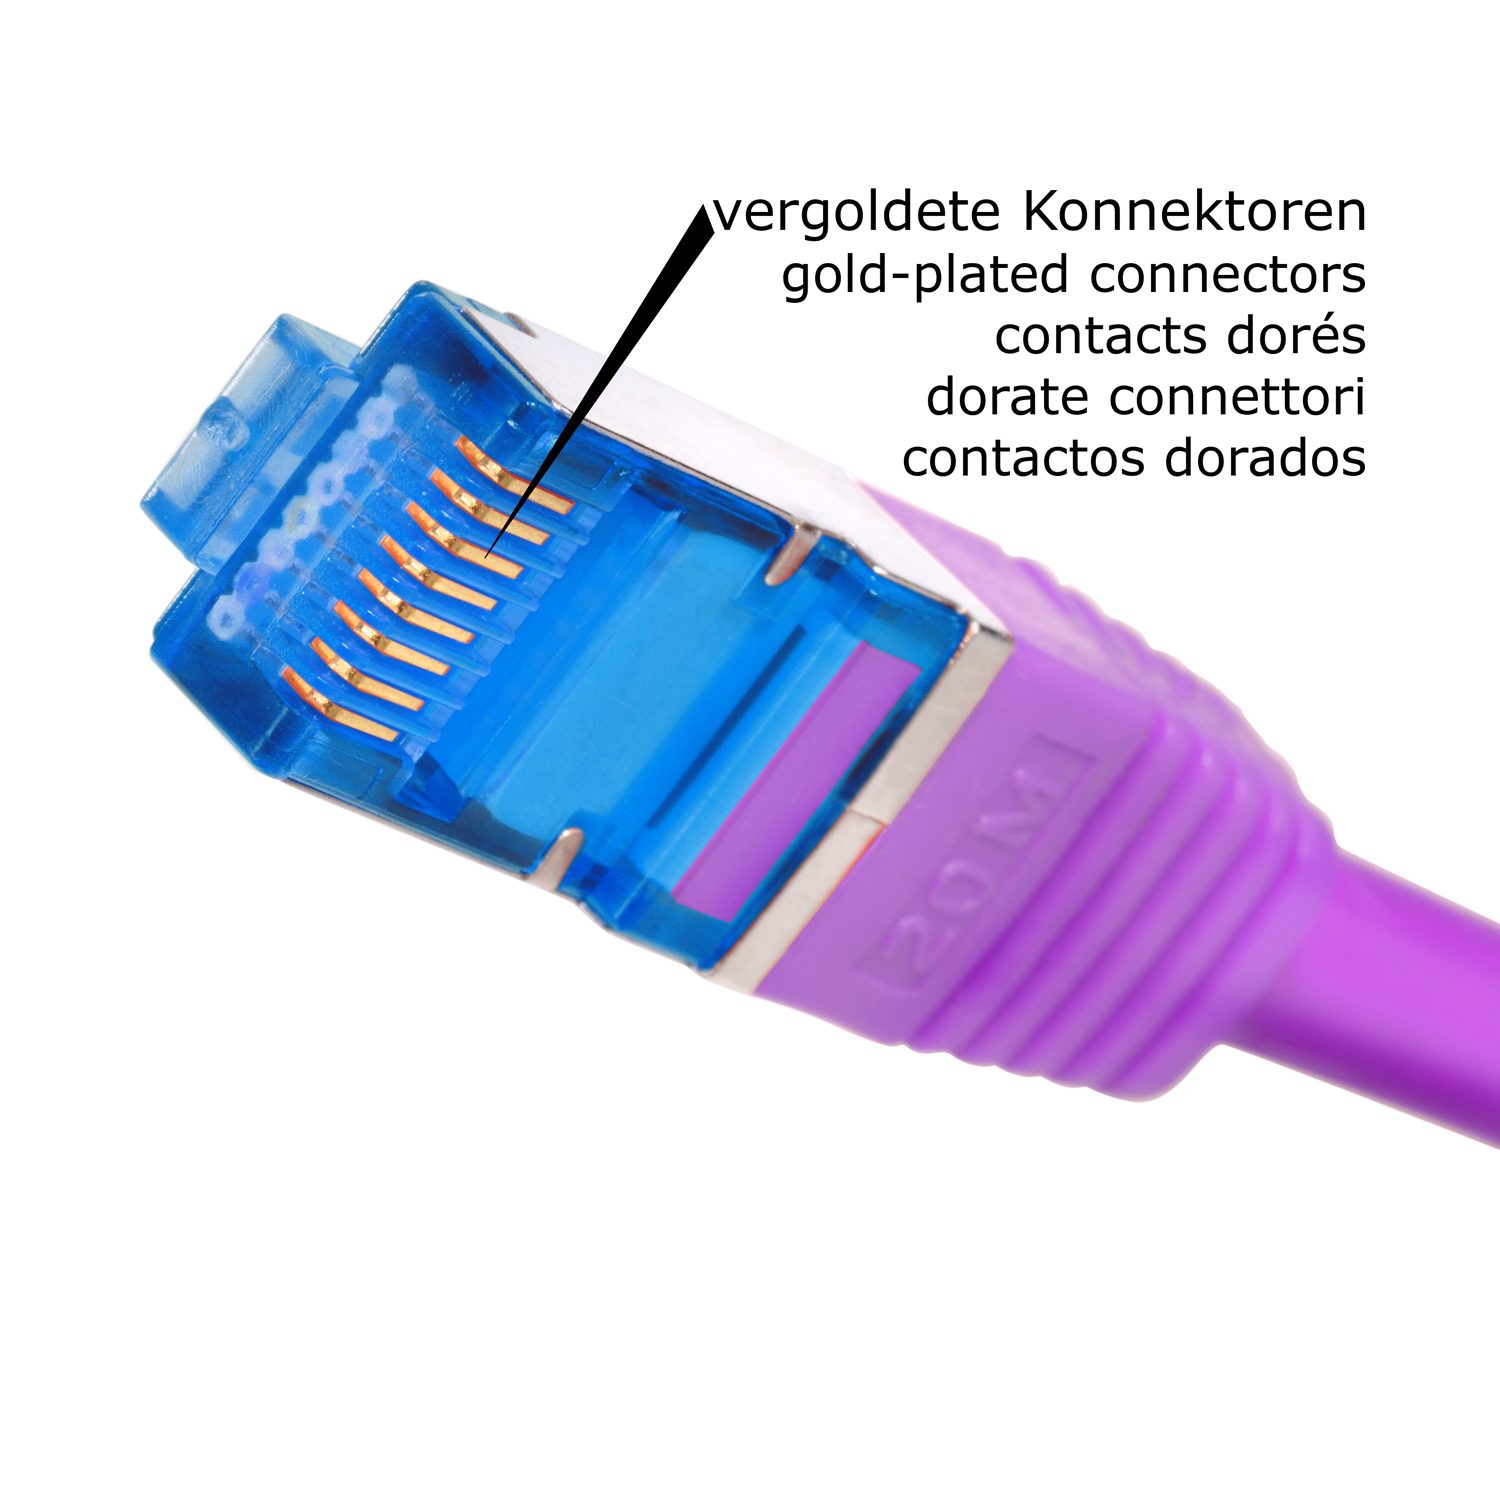 S/FTP Netzwerkkabel 10m 10GBit, m Netzwerkkabel, TPFNET violett, 10 Patchkabel /